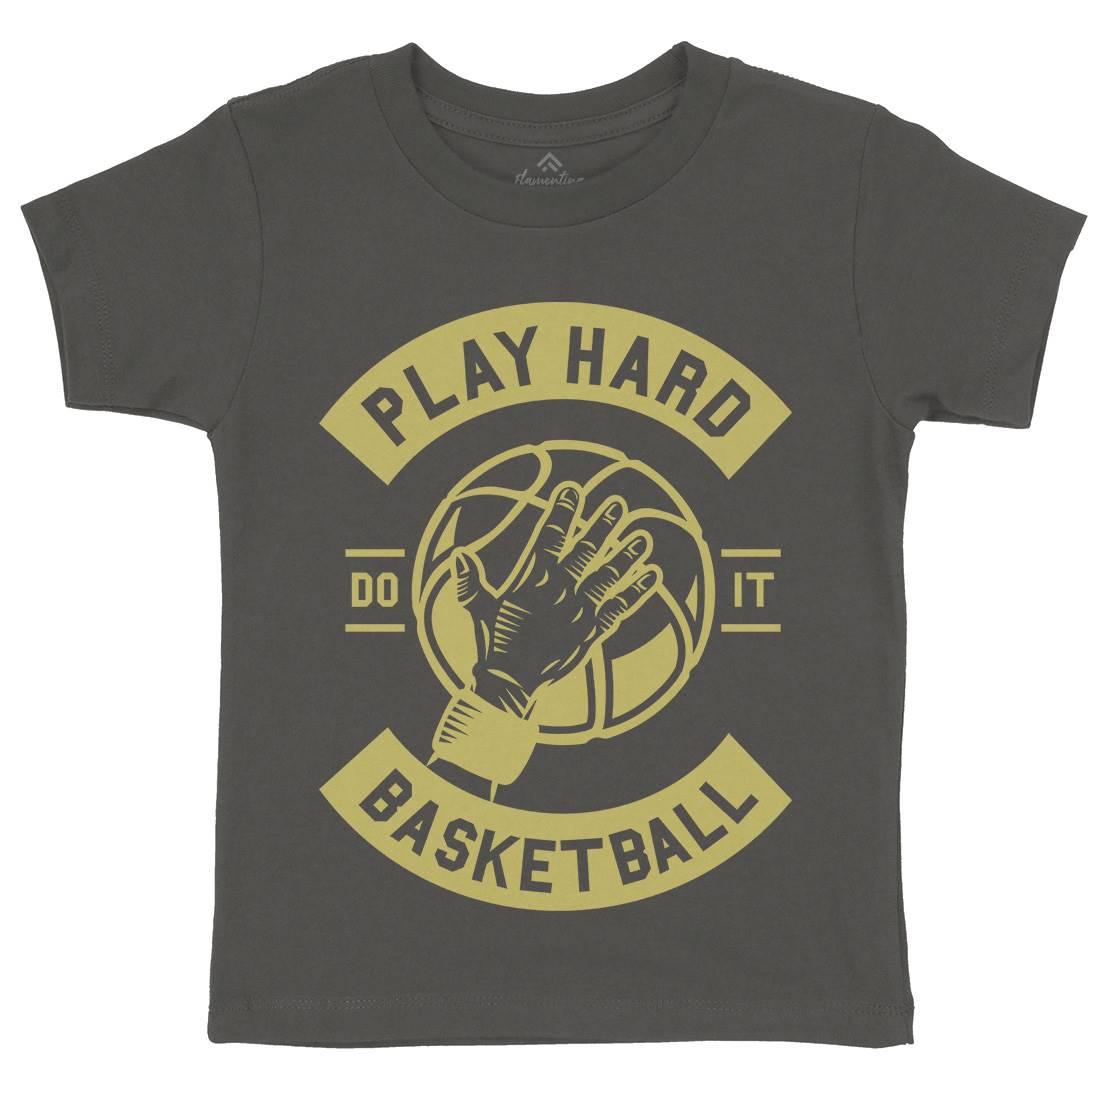 Play Hard Basketball Kids Organic Crew Neck T-Shirt Sport A261